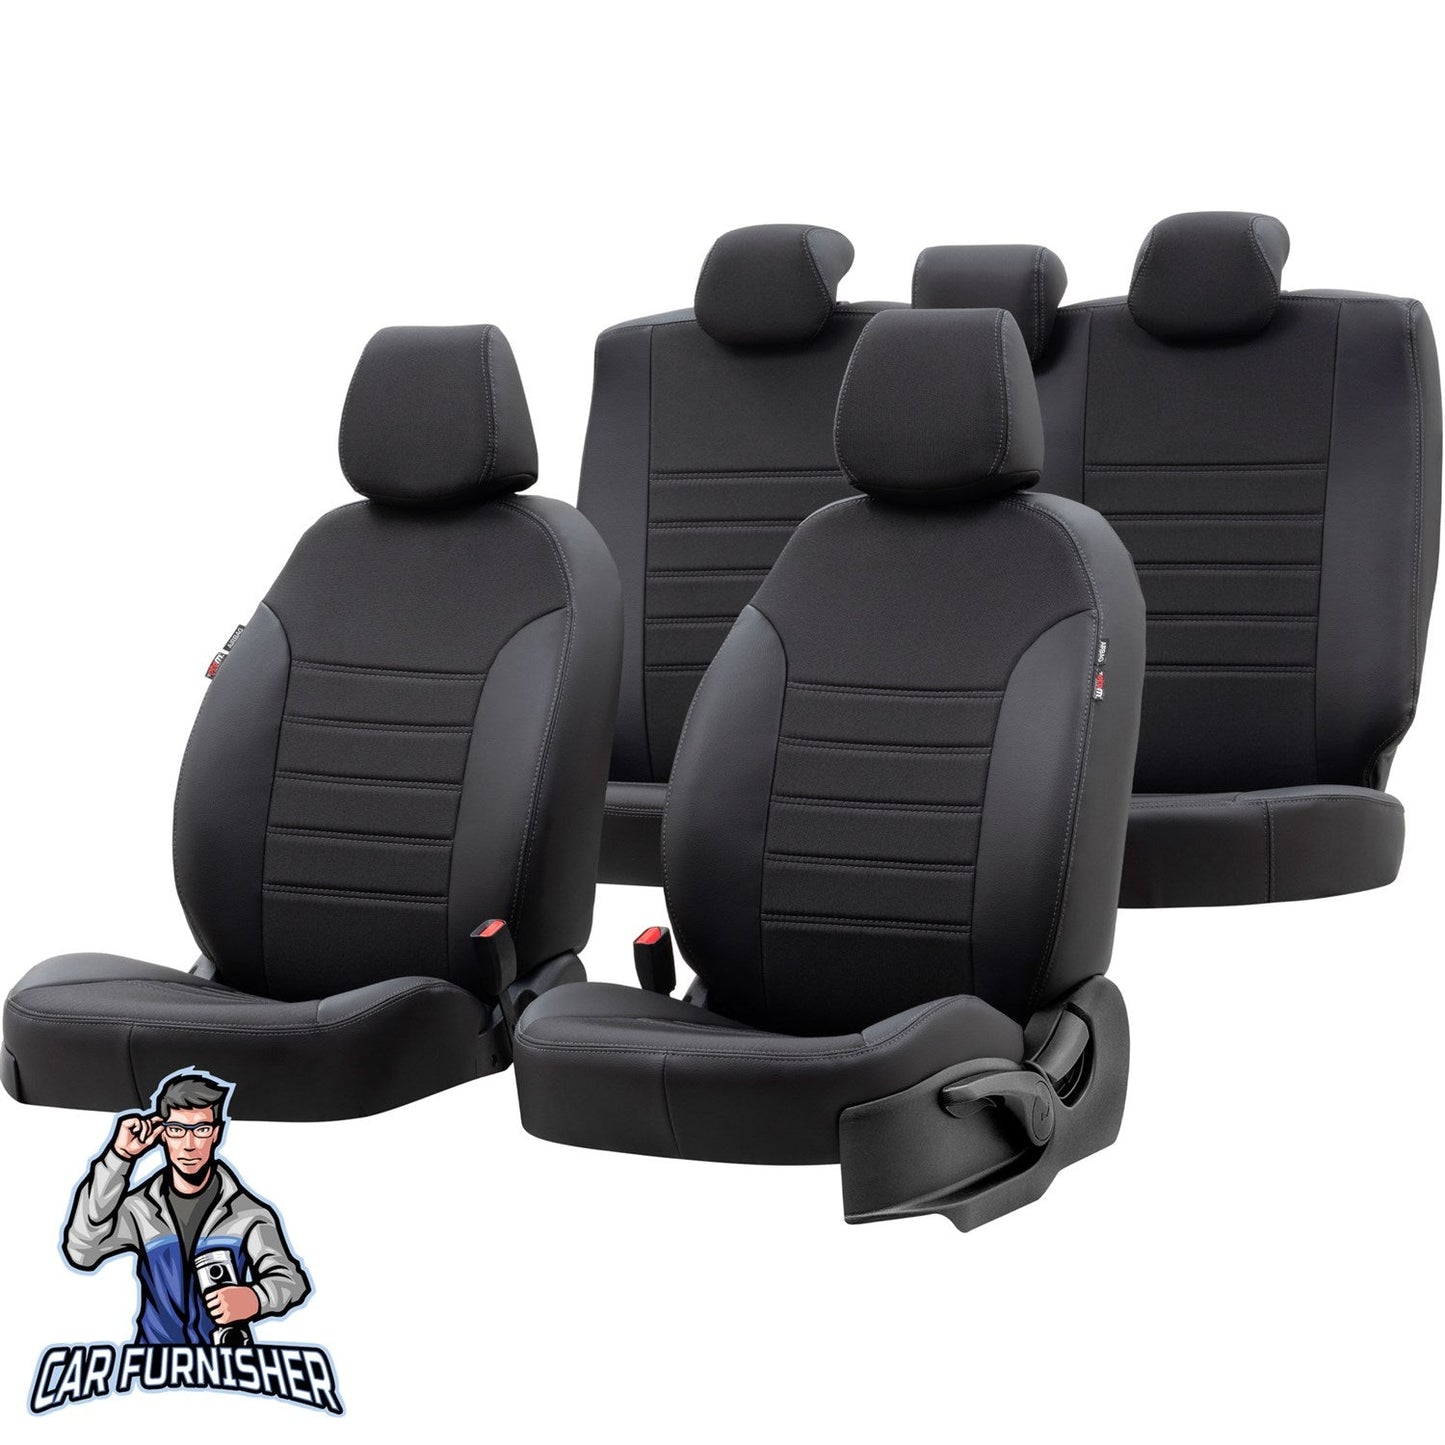 Toyota Rav4 Seat Cover Paris Leather & Jacquard Design Black Leather & Jacquard Fabric